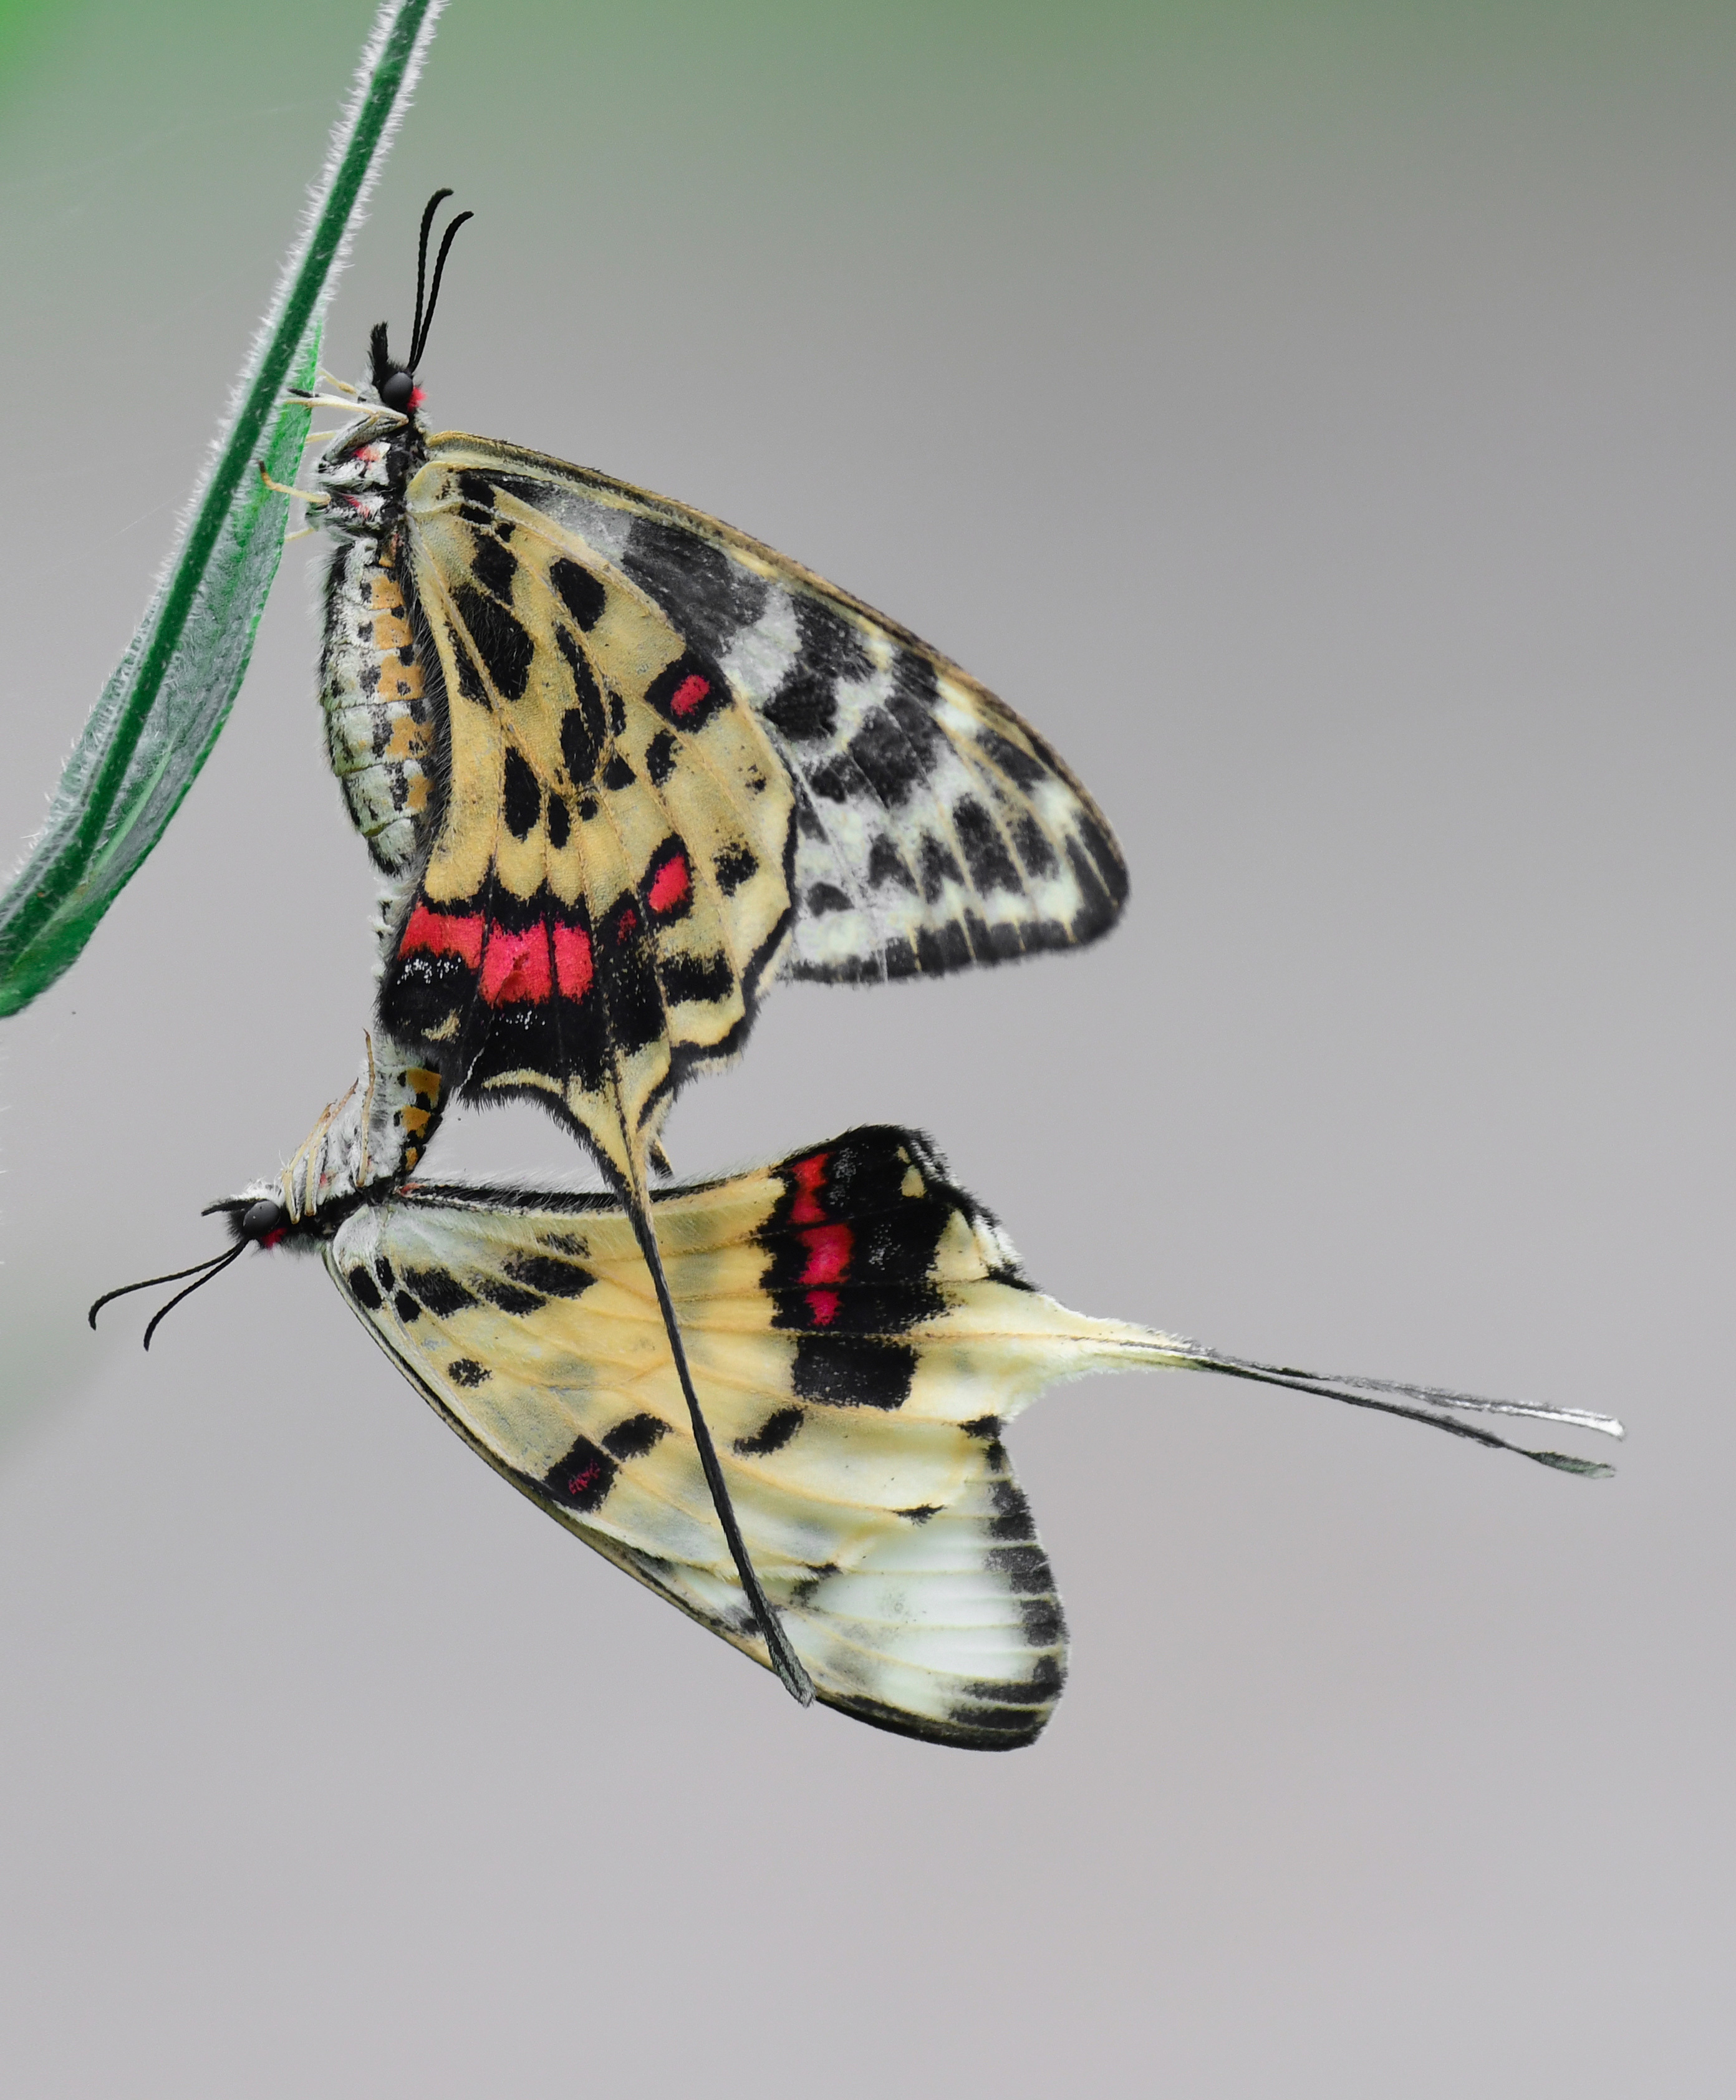 王建军摄丝带凤蝶是我国非常珍贵的蝶种,在国内曾被列为14种珍贵蝴蝶